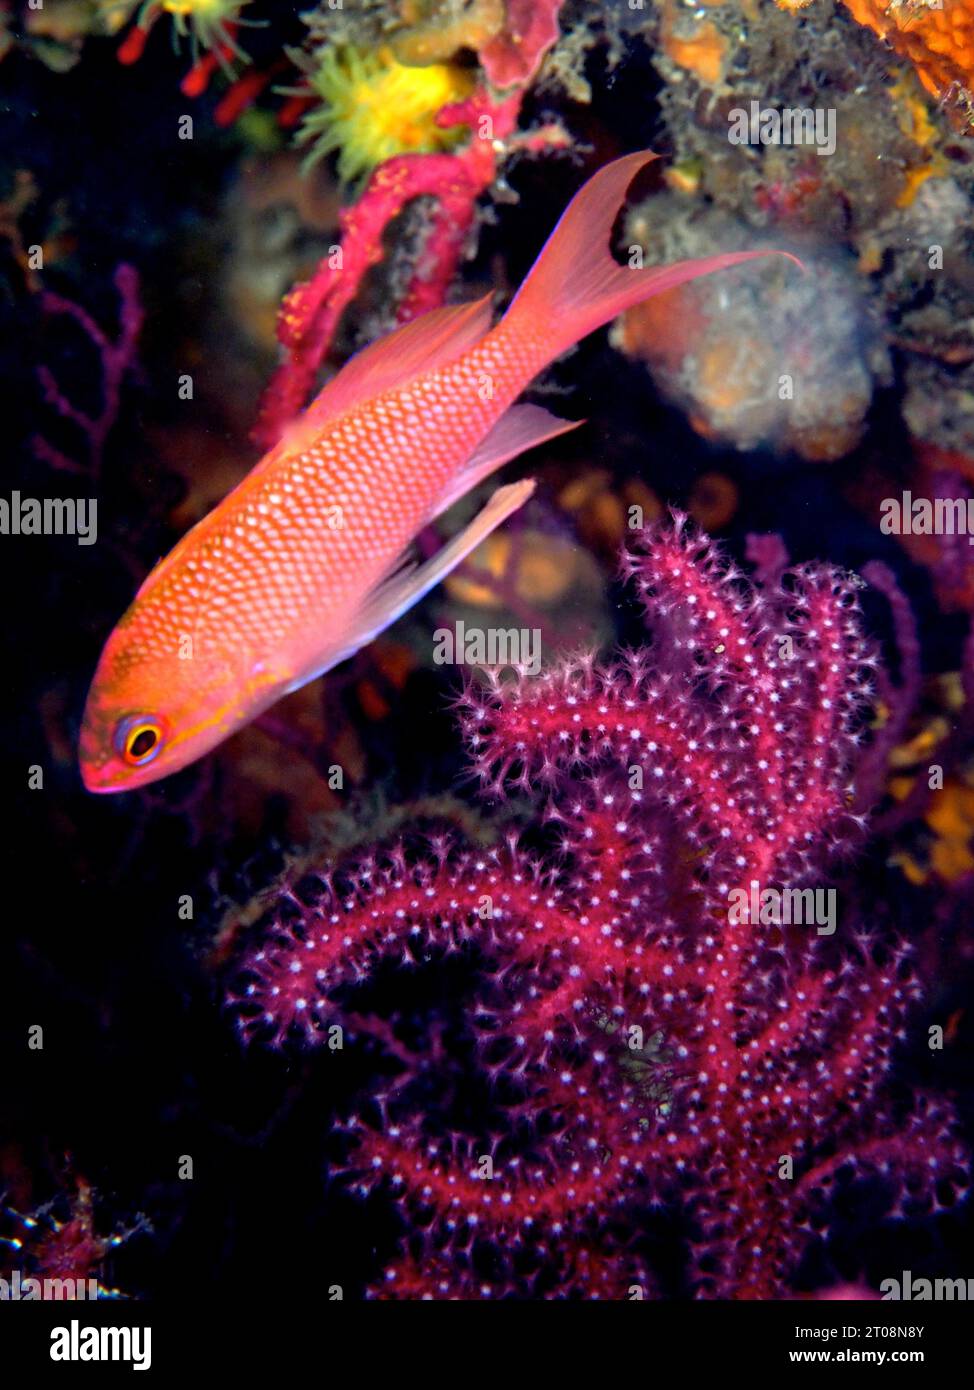 Mediterranean Flagfish (Anthias anthias), Dive Site Marine Reserve Cap de Creus, Cadaques, Costa Brava, Spain, Mediterranean Sea Stock Photo